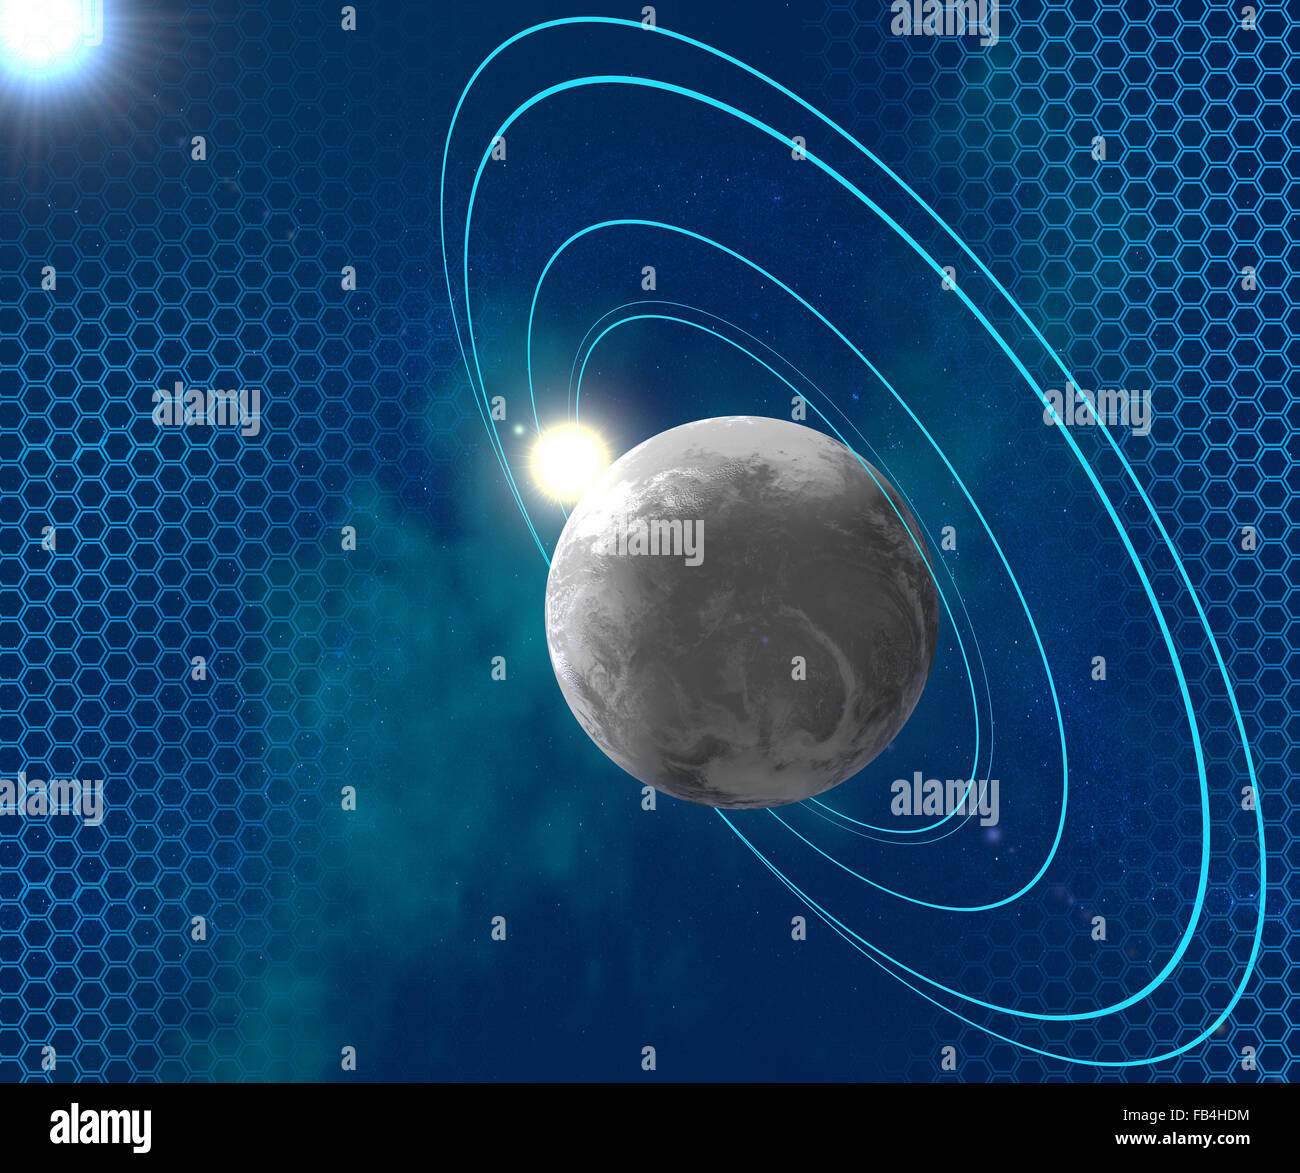 Planeta rodeado por anillos orbitales azul, espacio, ciencia ficción  Fotografía de stock - Alamy